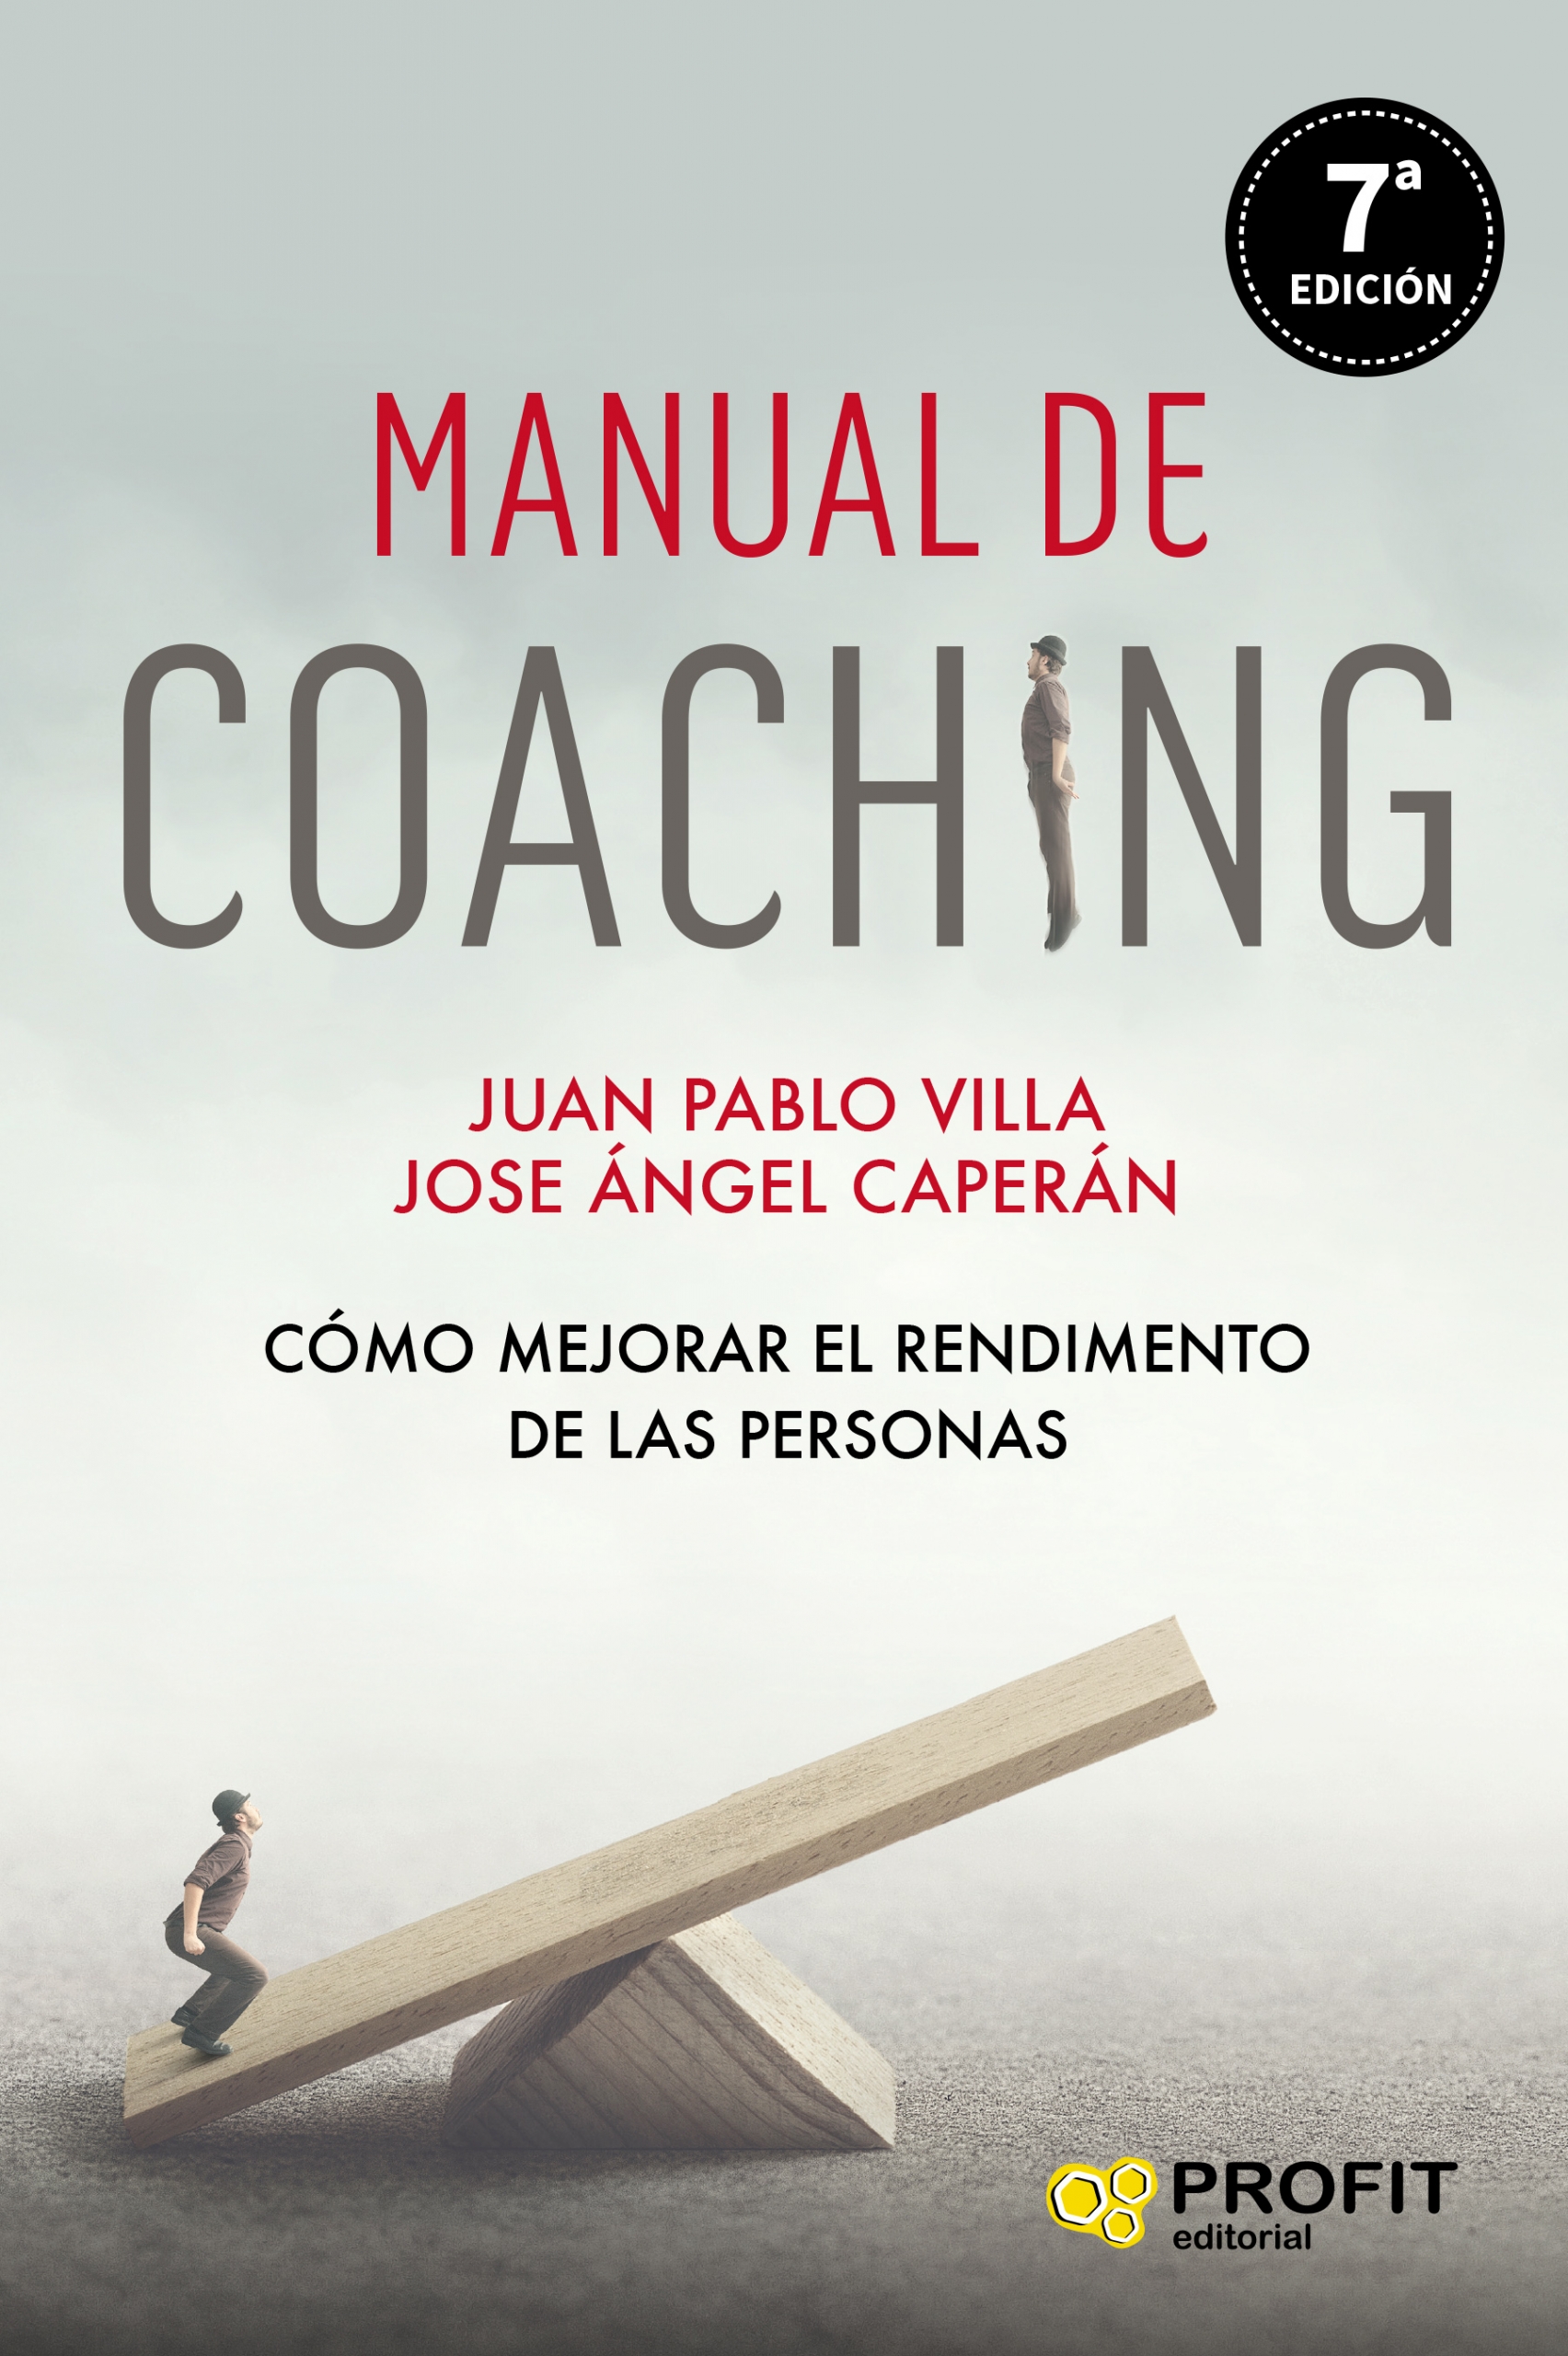 Anguila En la madrugada su Comprar libro Manual de coaching - Editorial Profit